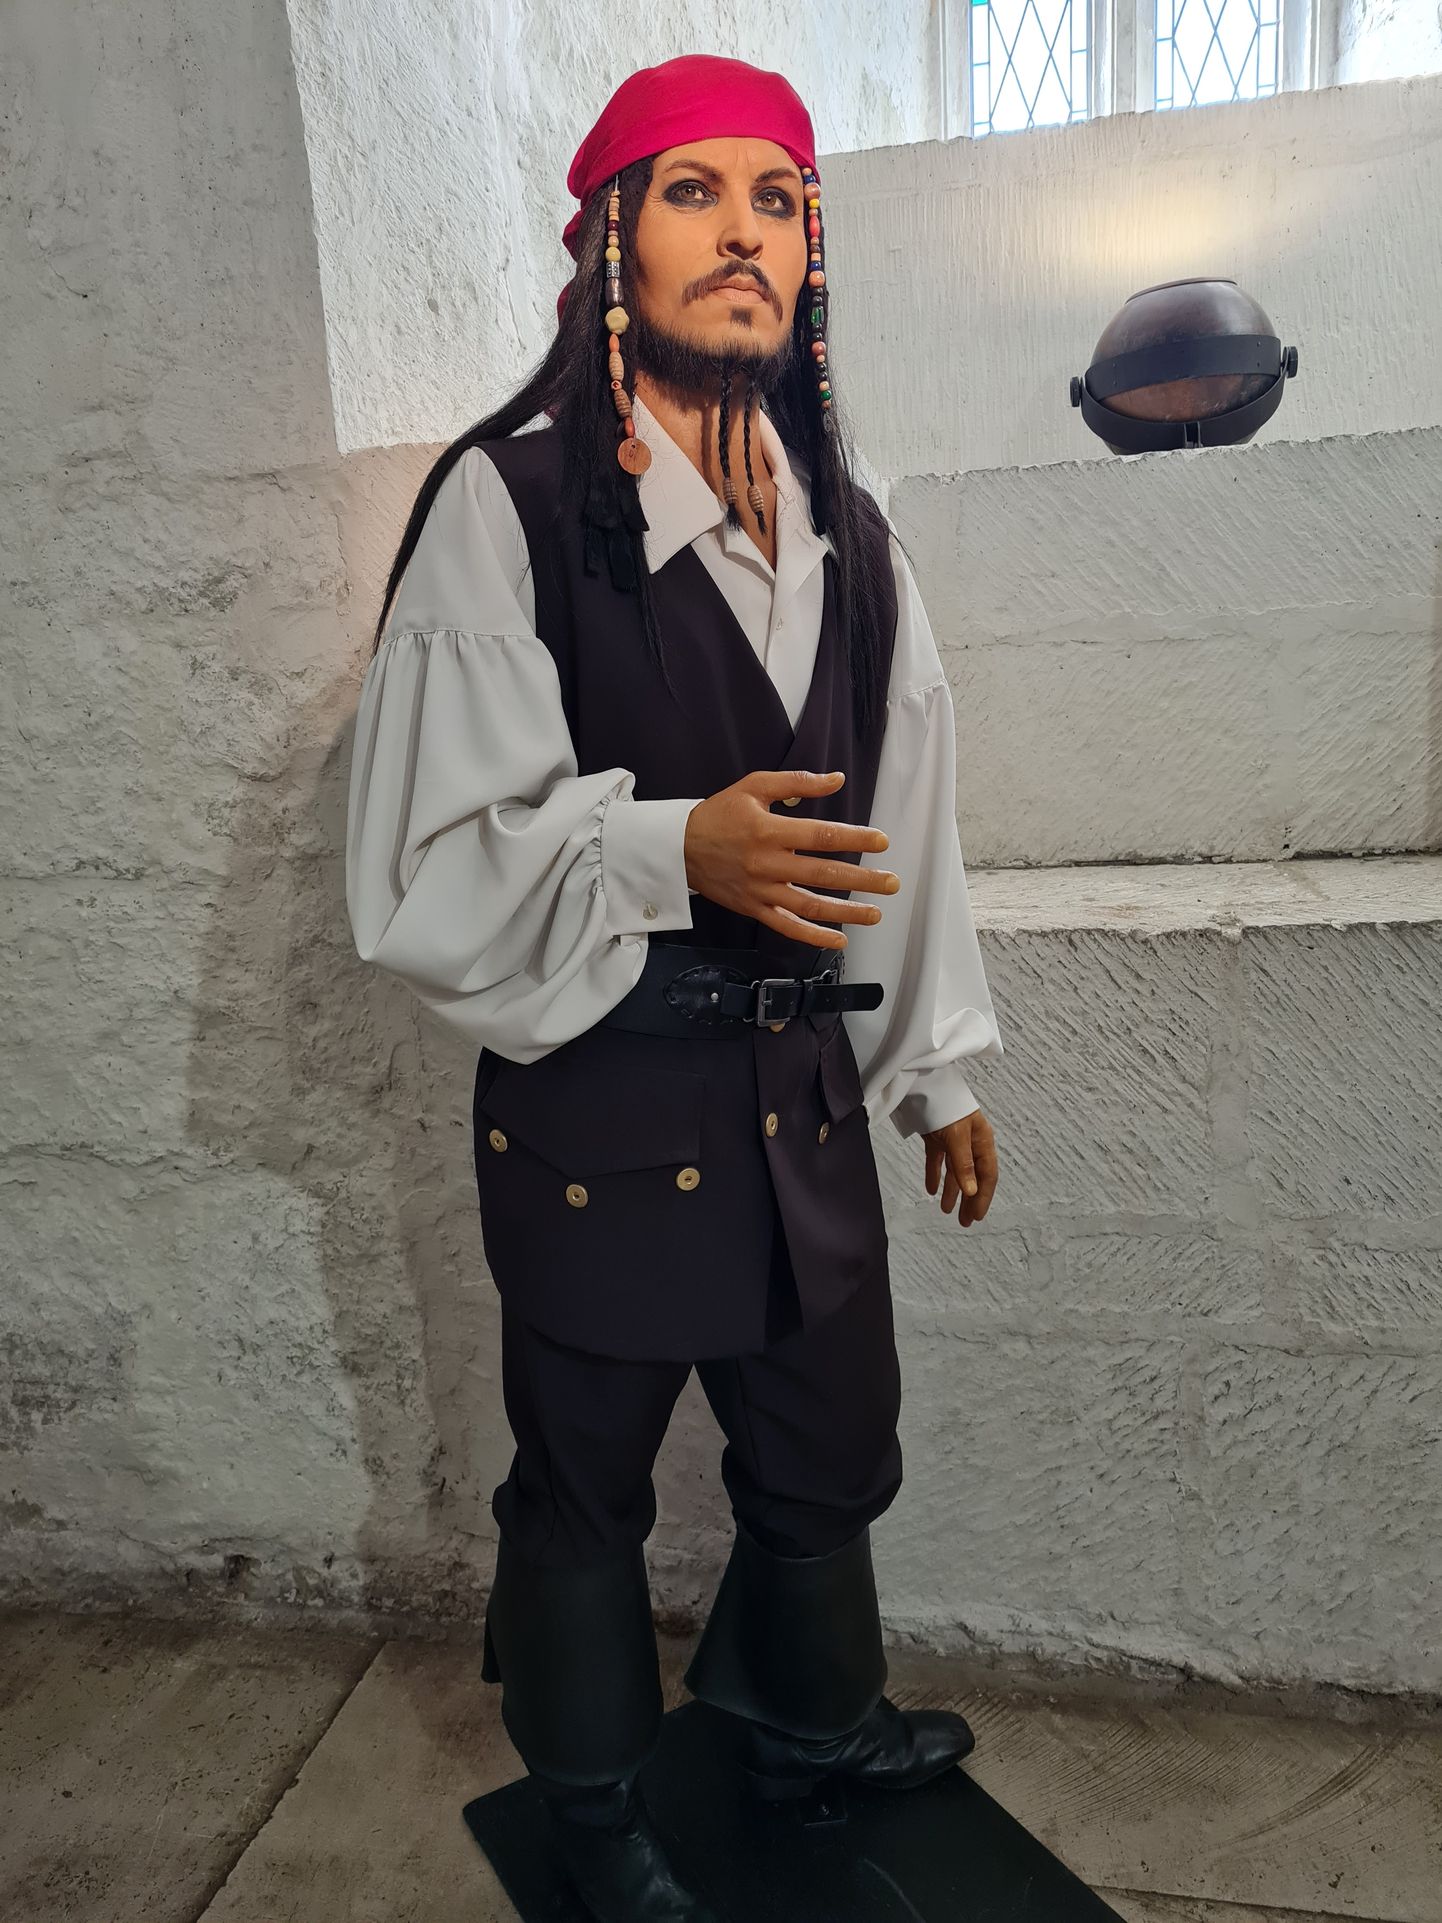 Ka kapten Jack Sparrow on näituse ajaks Saaremaale jõudnud.